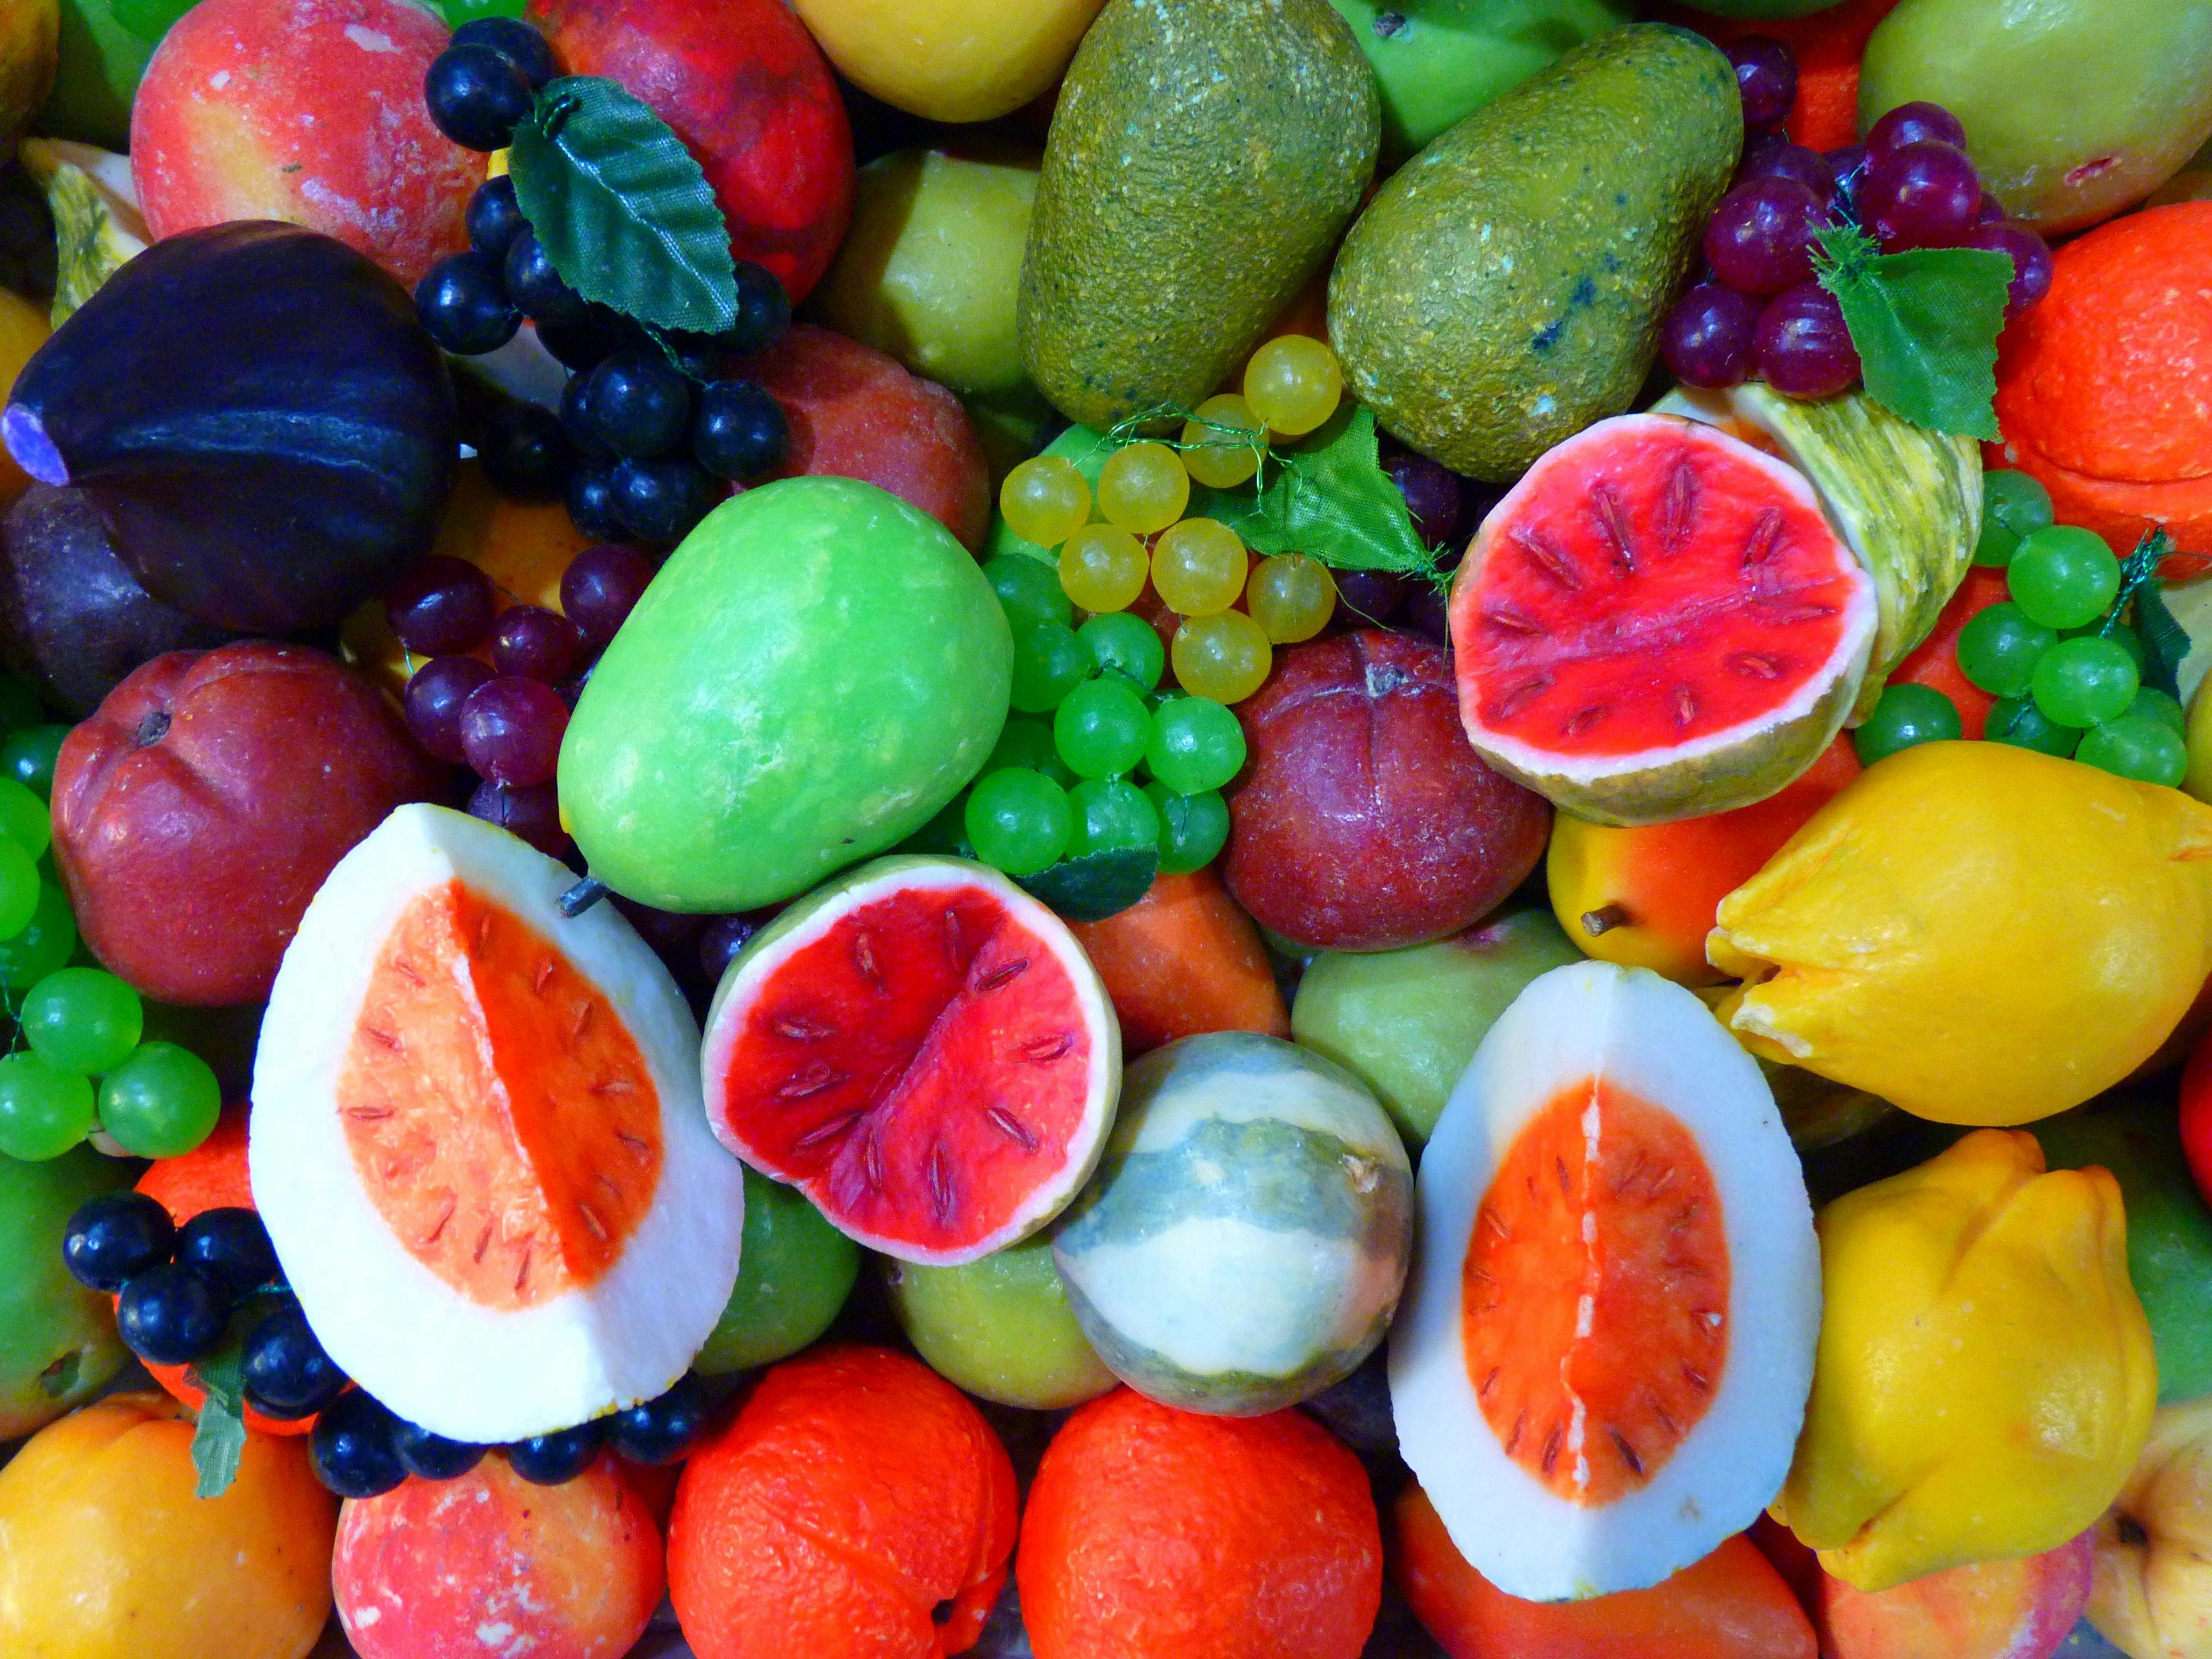 Hình ảnh trái cây đẹp sẽ mang lại cho bạn sự yêu thích đối với những loại hoa quả khác nhau và cảm thấy hạnh phúc mỗi khi được ngắm nhìn chúng. Những hình ảnh này sẽ là nguồn cảm hứng lớn cho bạn khi chọn những loại trái cây thật ngon để ăn.